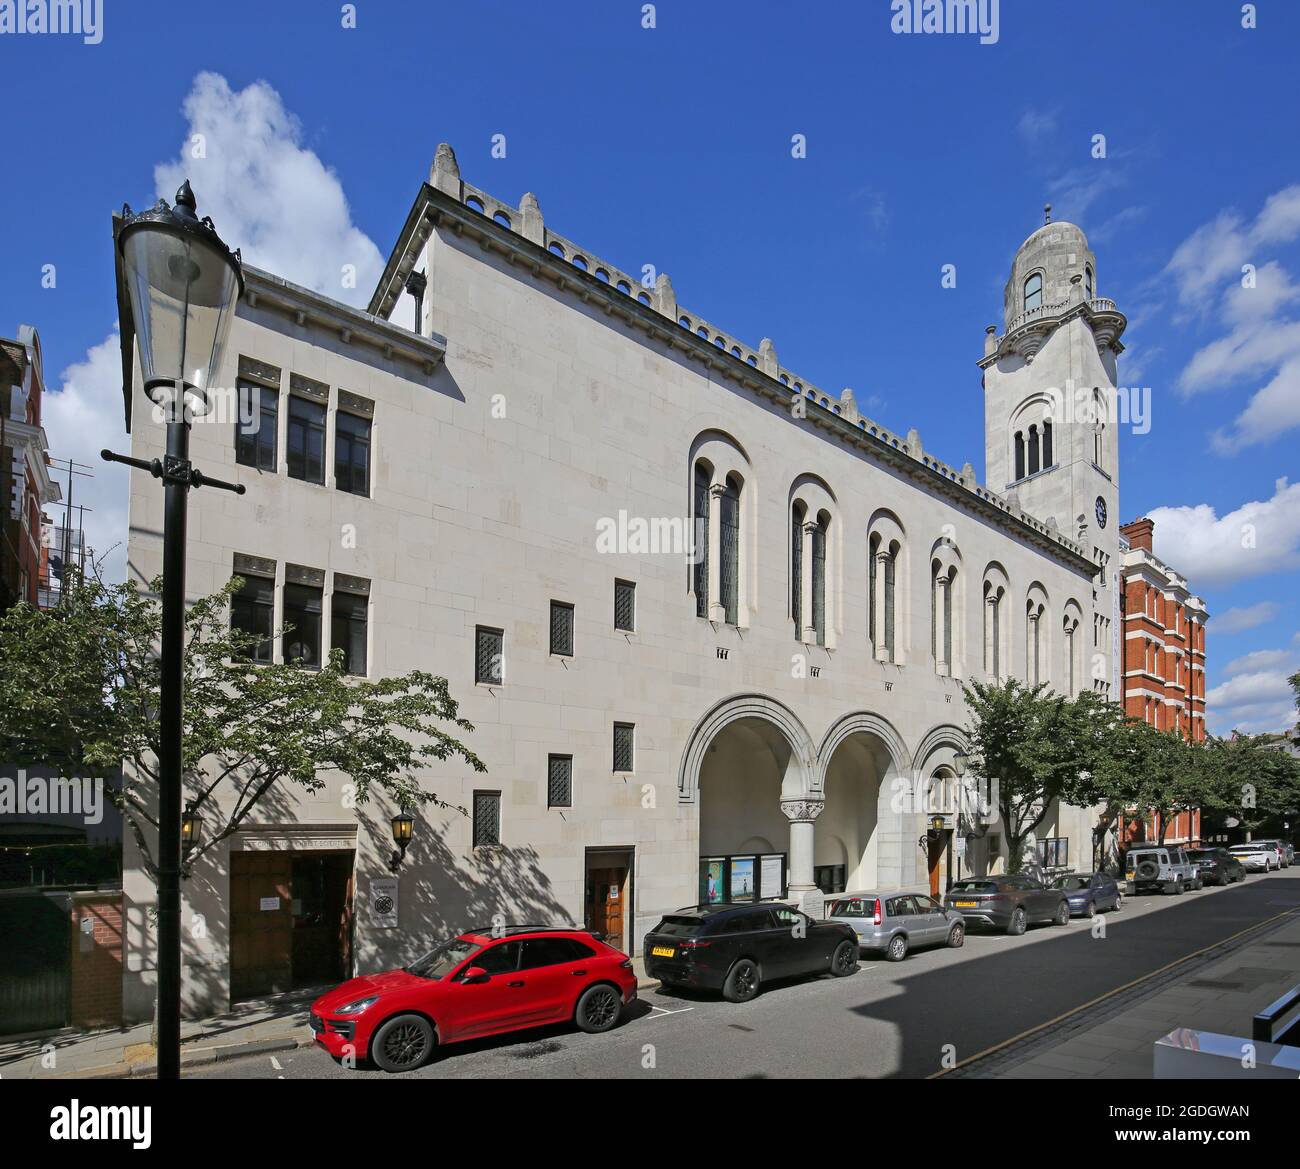 Cadogan Hall, Chelsea, London, Großbritannien. 1907 als Kirche erbaut, heute einer der führenden Veranstaltungsorte für klassische Musik in London. Sloane Terrace, SW1.Robert Fellowes Stockfoto